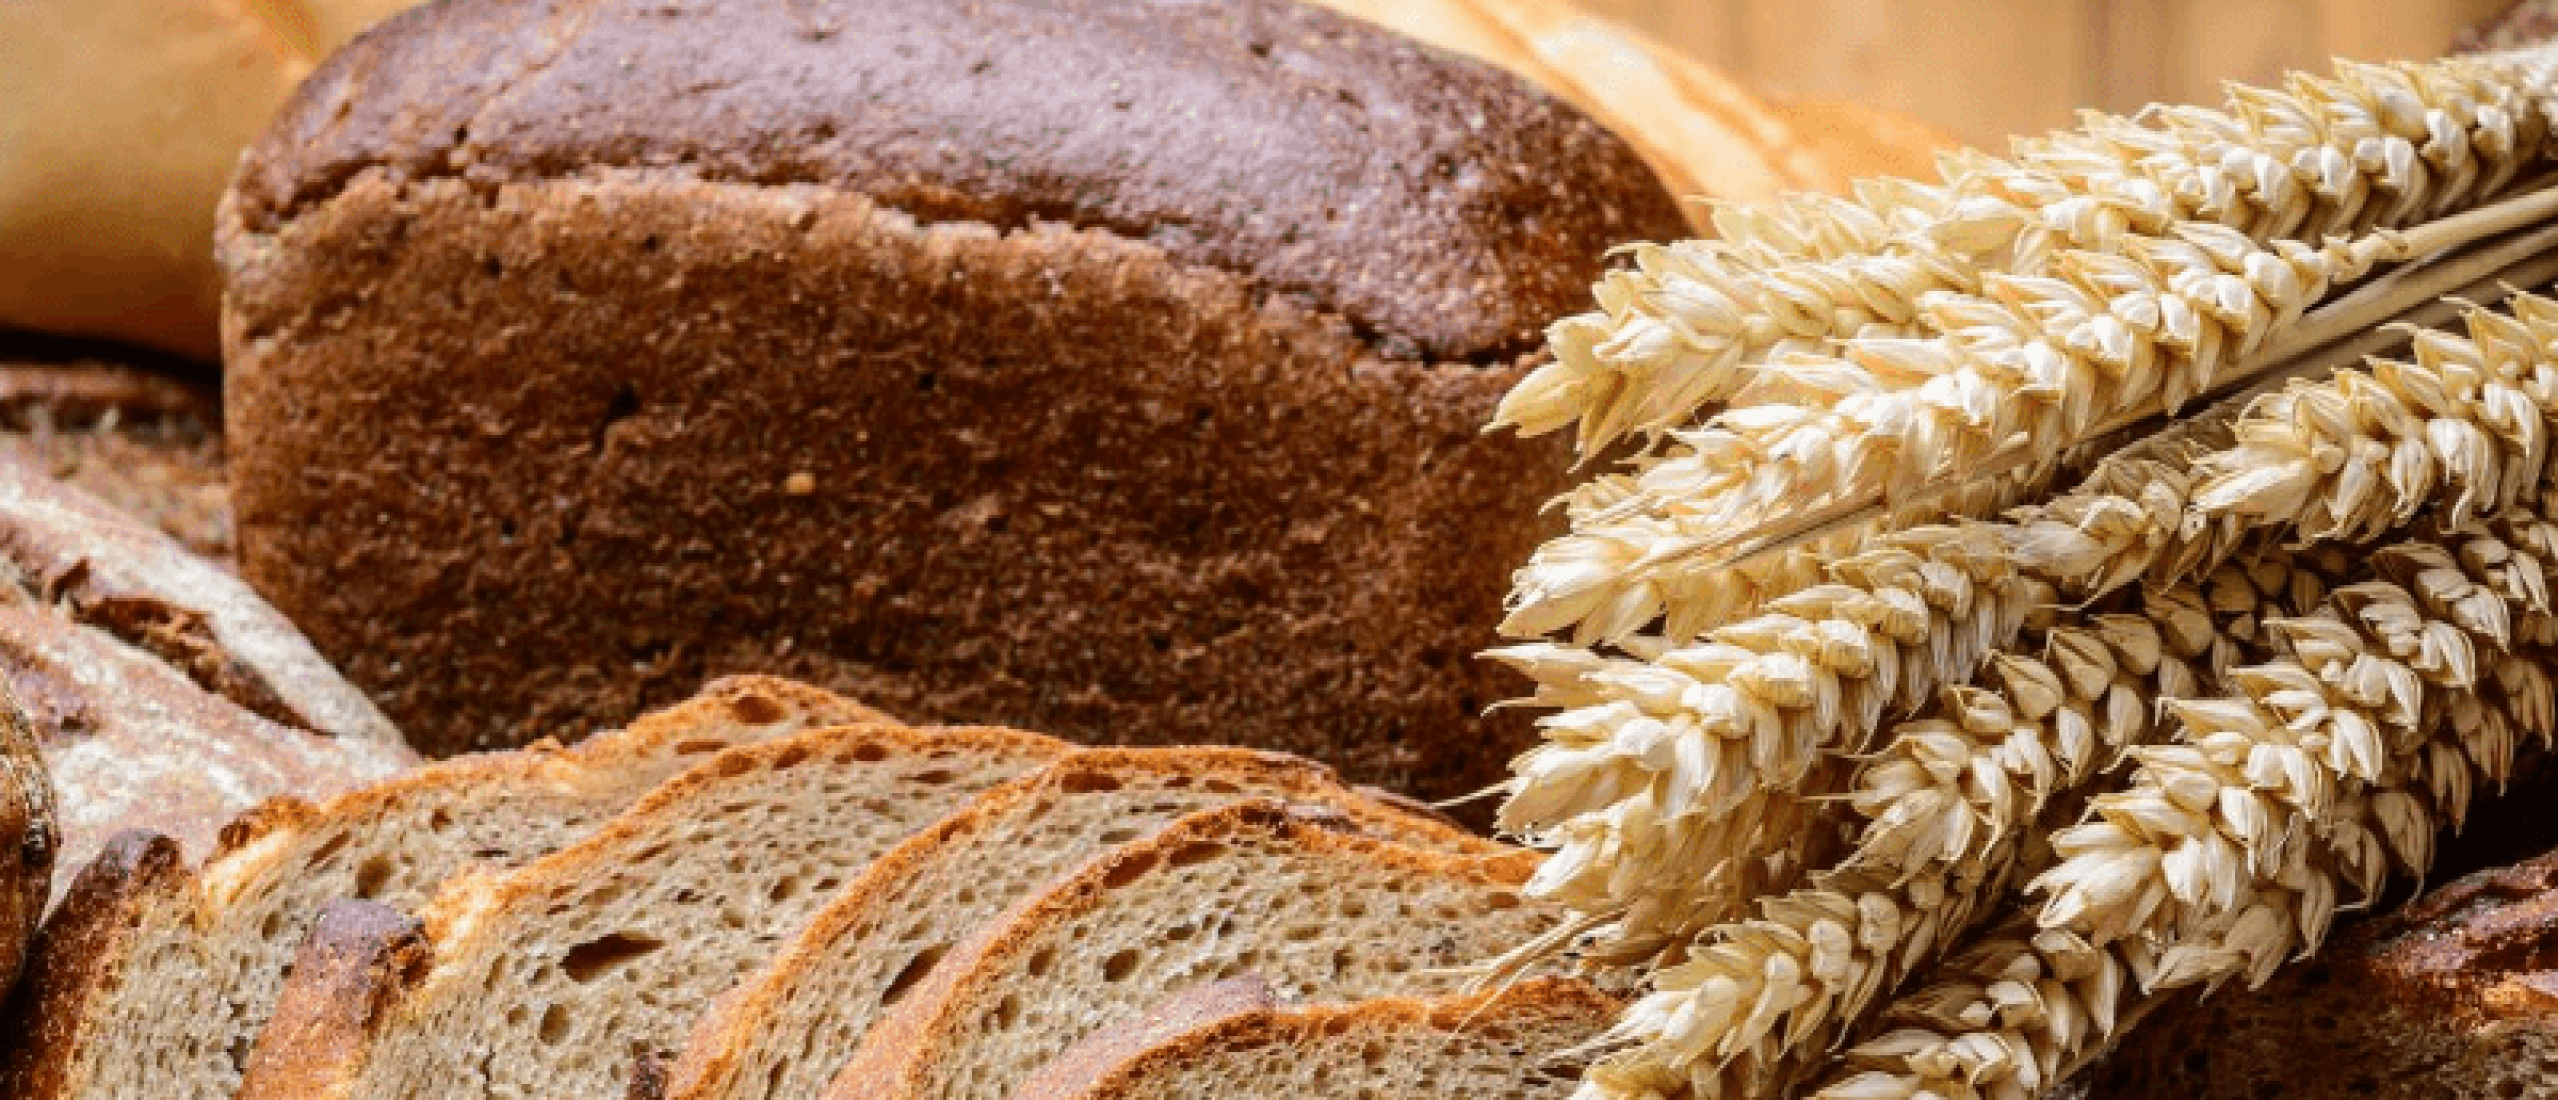 Welk brood is gezond? Lees hier de zin & onzin over volkoren brood en bruin, wit of speltbrood